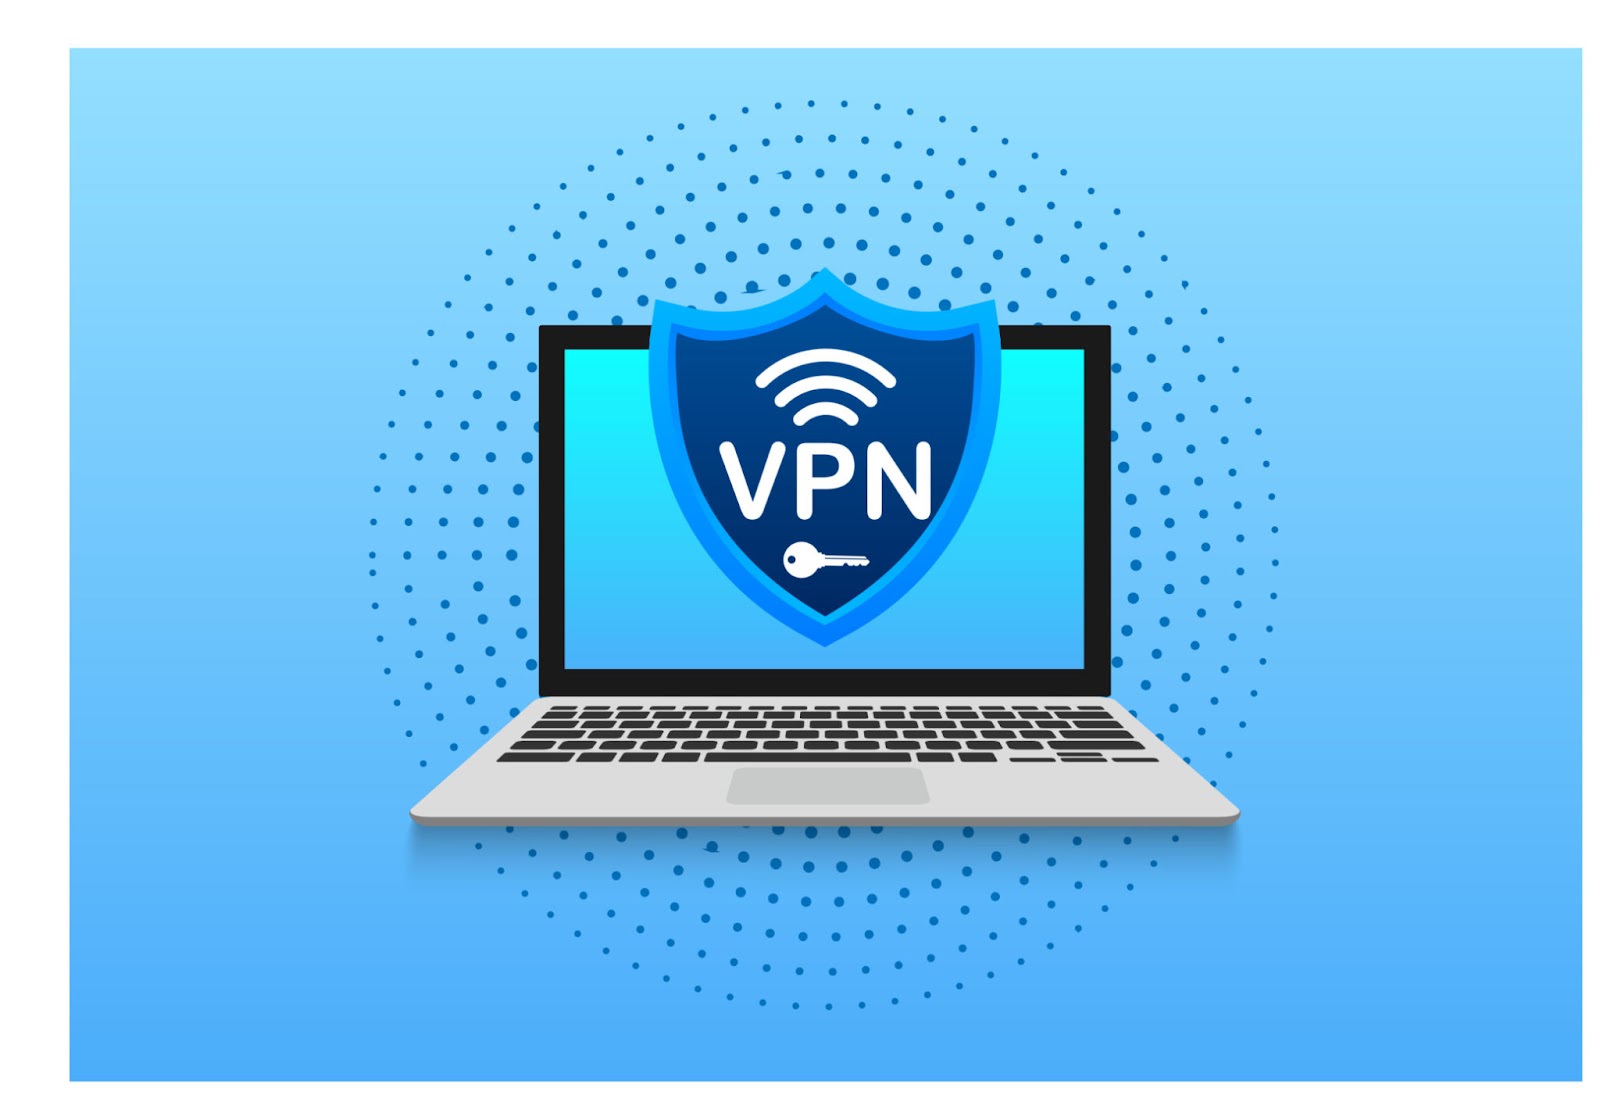 Zigmafive VPN Services